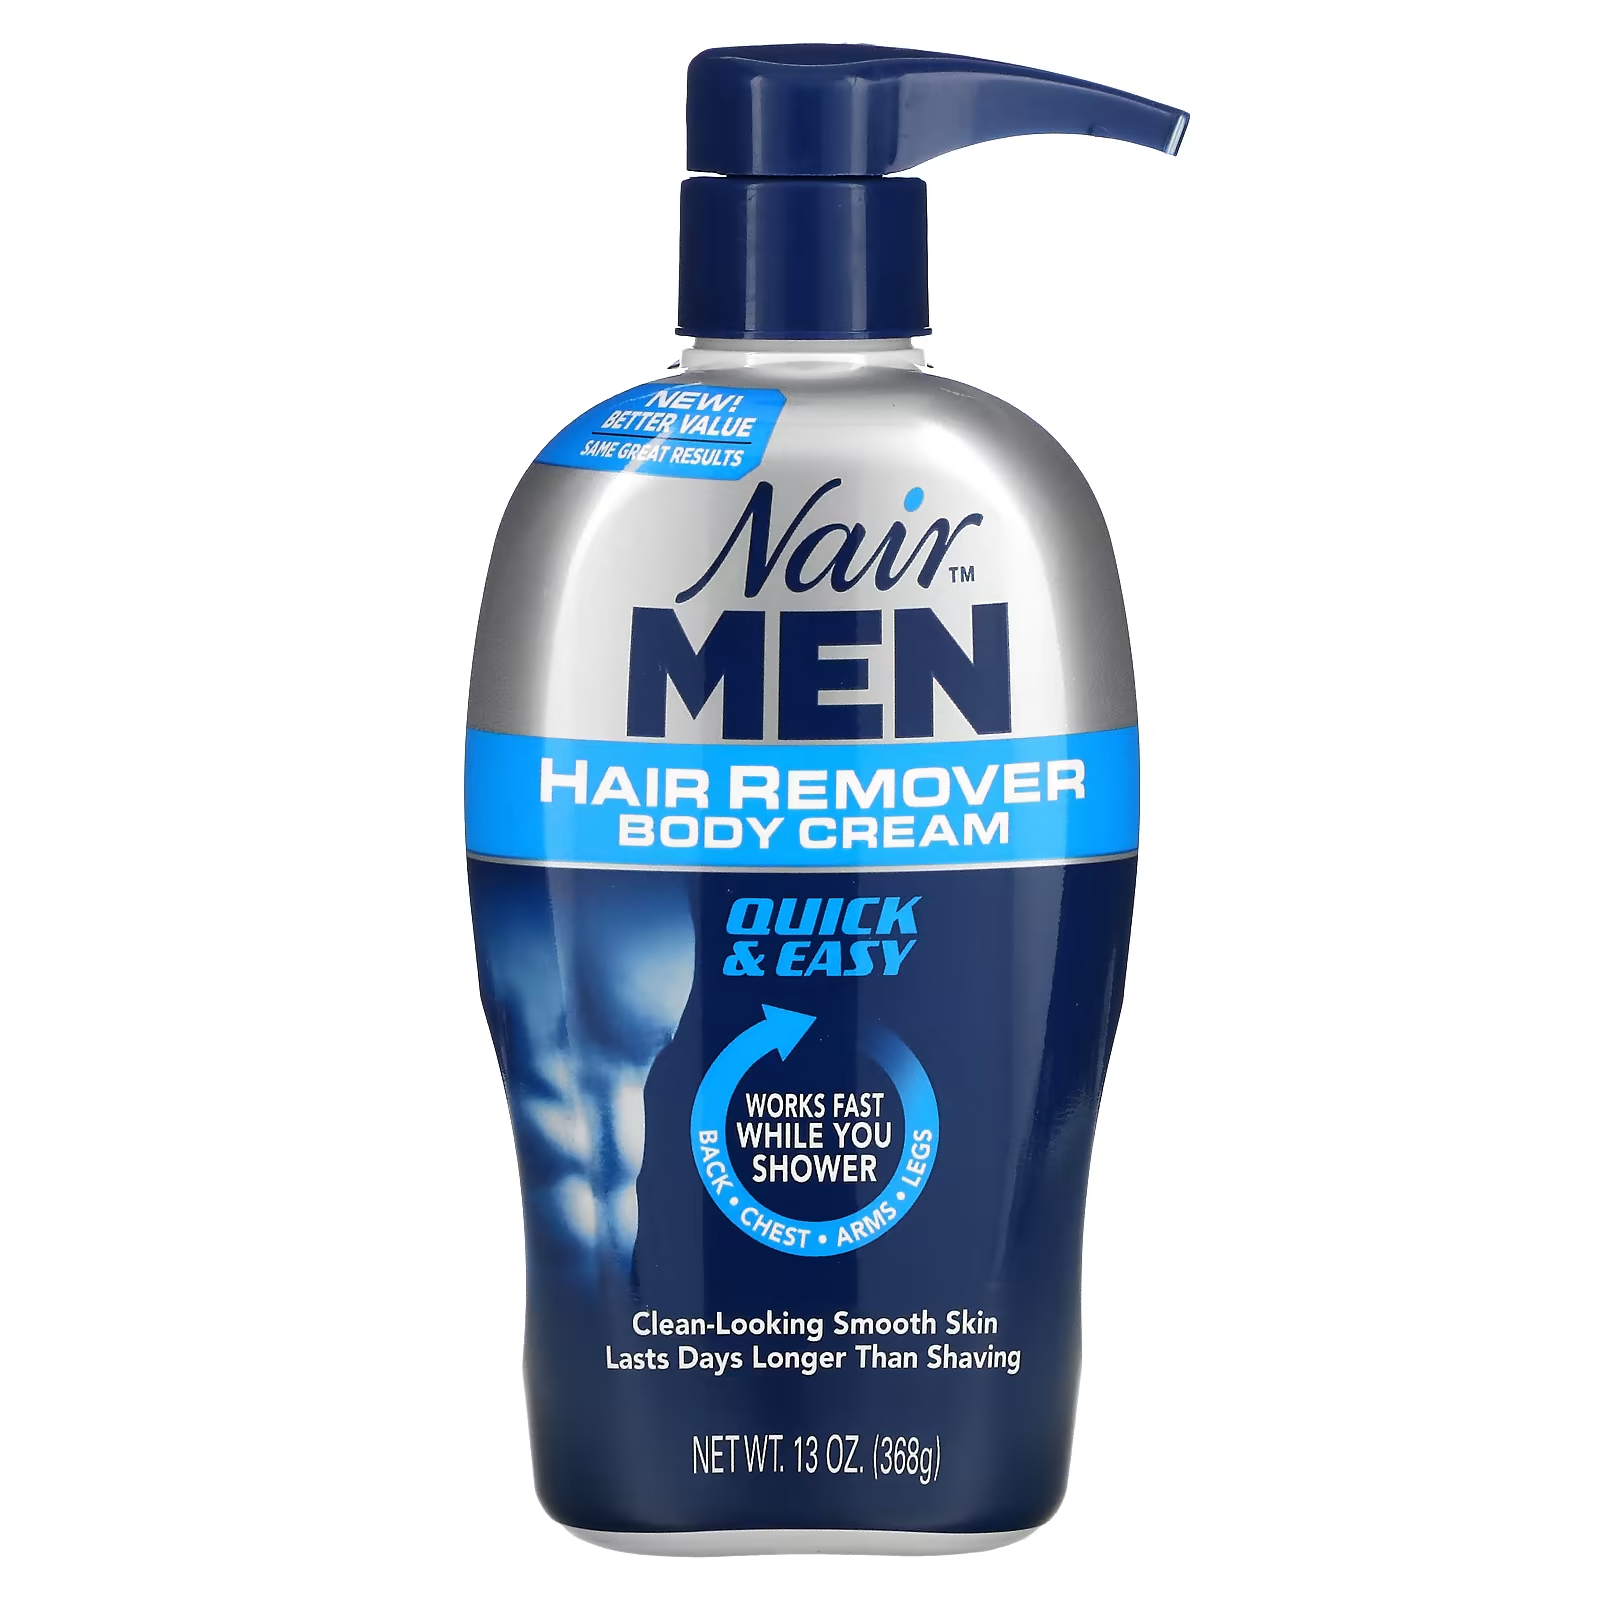 Крем Nair For Men для удаления волос, 368 г nair for men hair remover body cream 13 oz 368 g